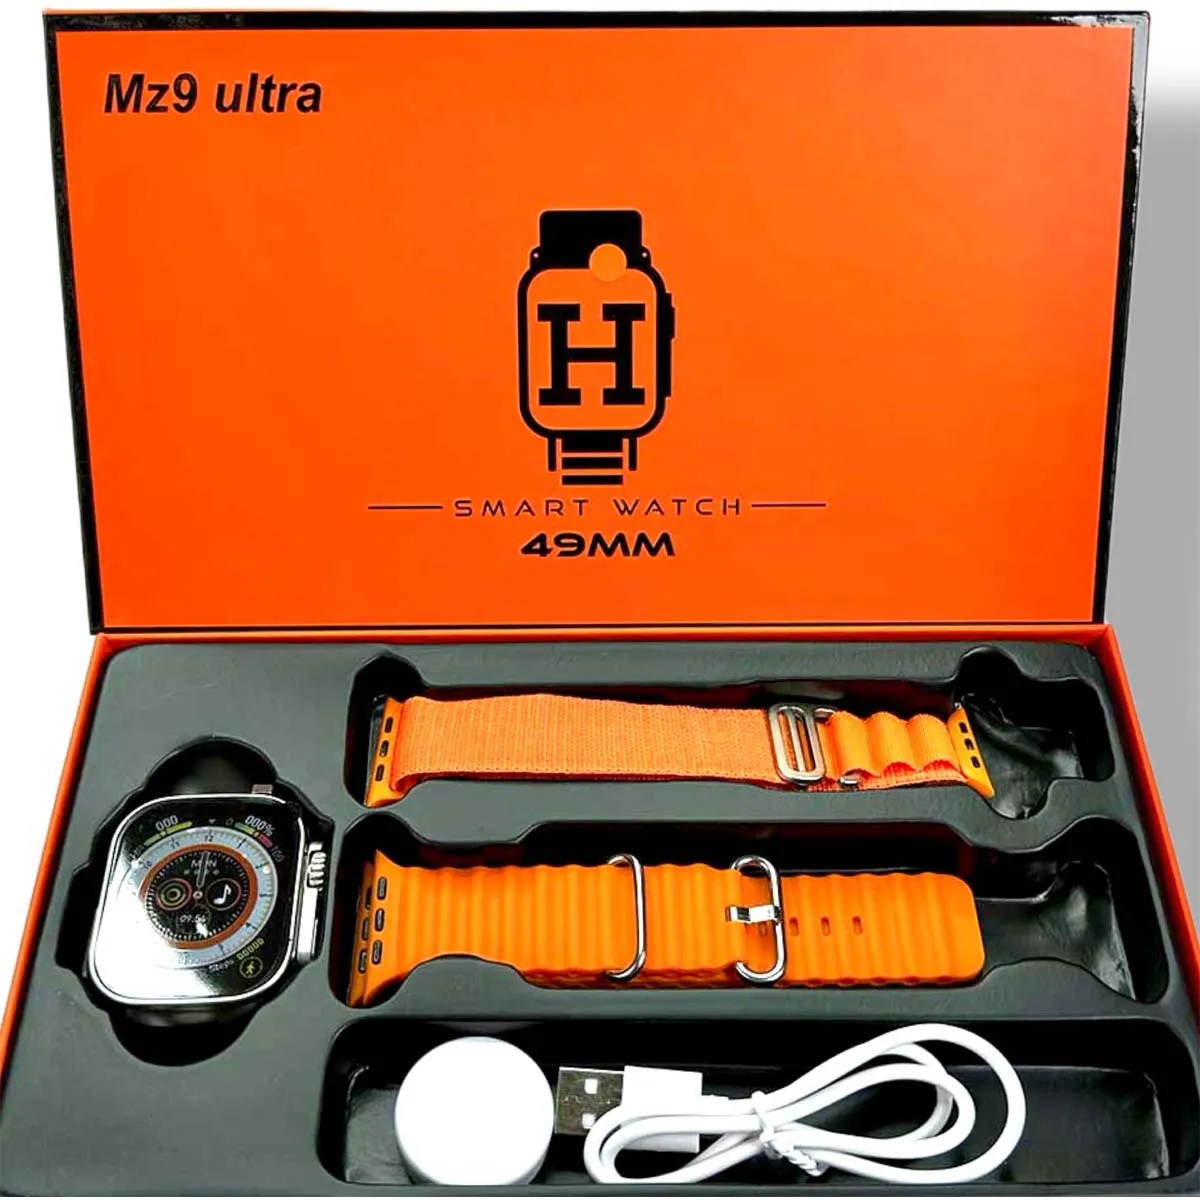 MZ9 Ultra Smart Watch Price in Pakistan